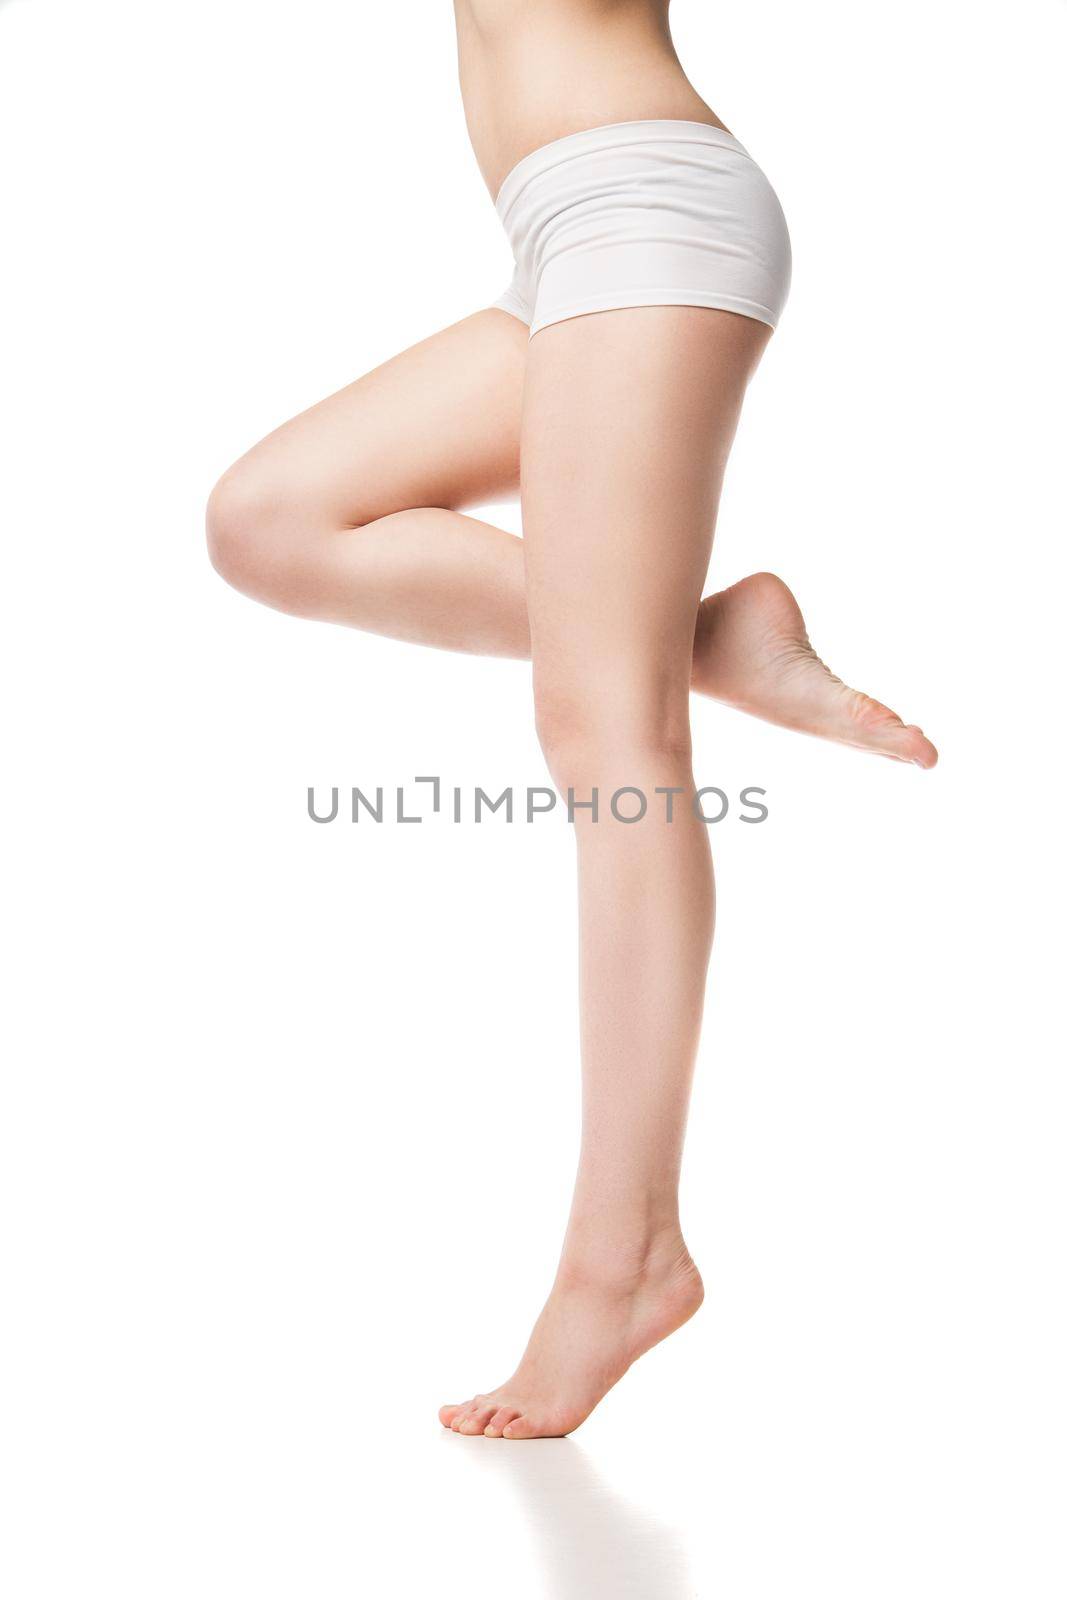 Beautiful wet feet, women legs on a white background by Julenochek